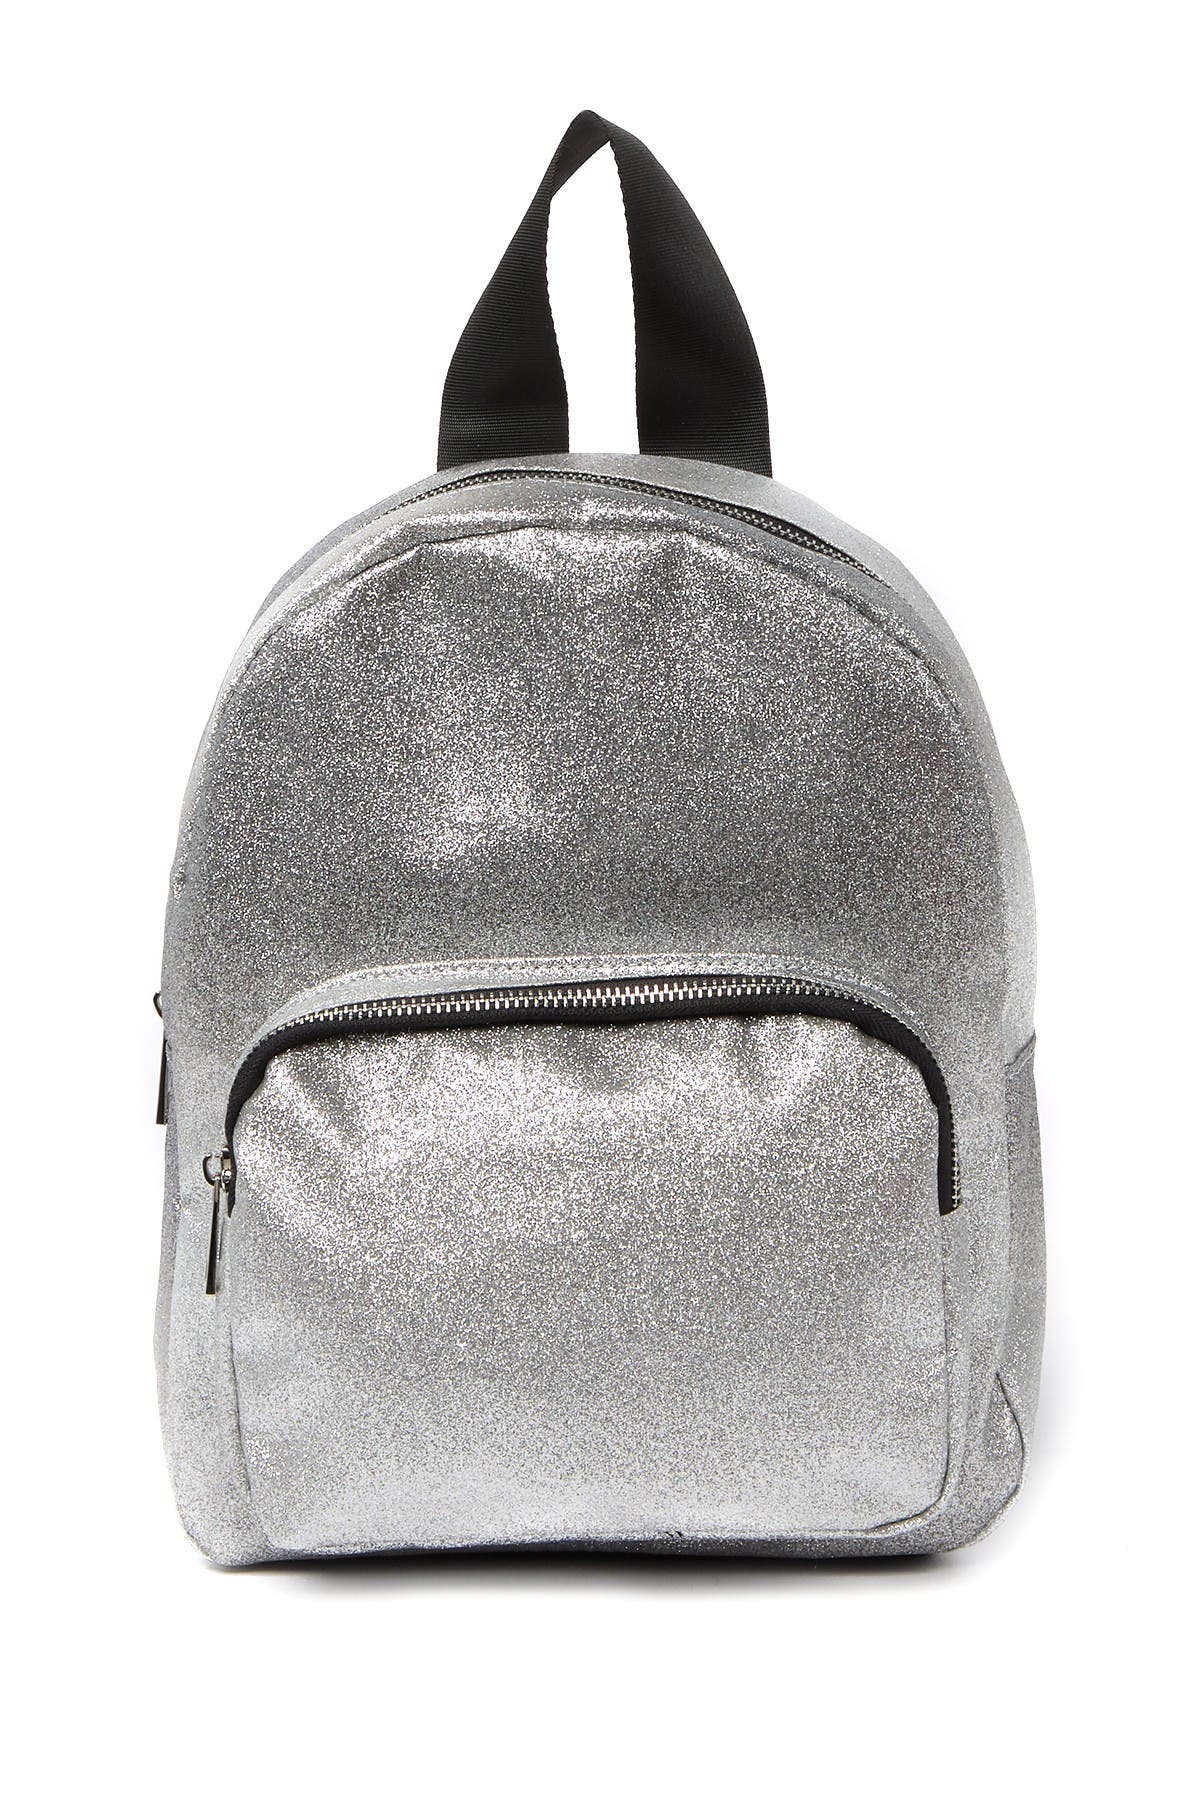 Madden Girl | Ombre Glitter Backpack 